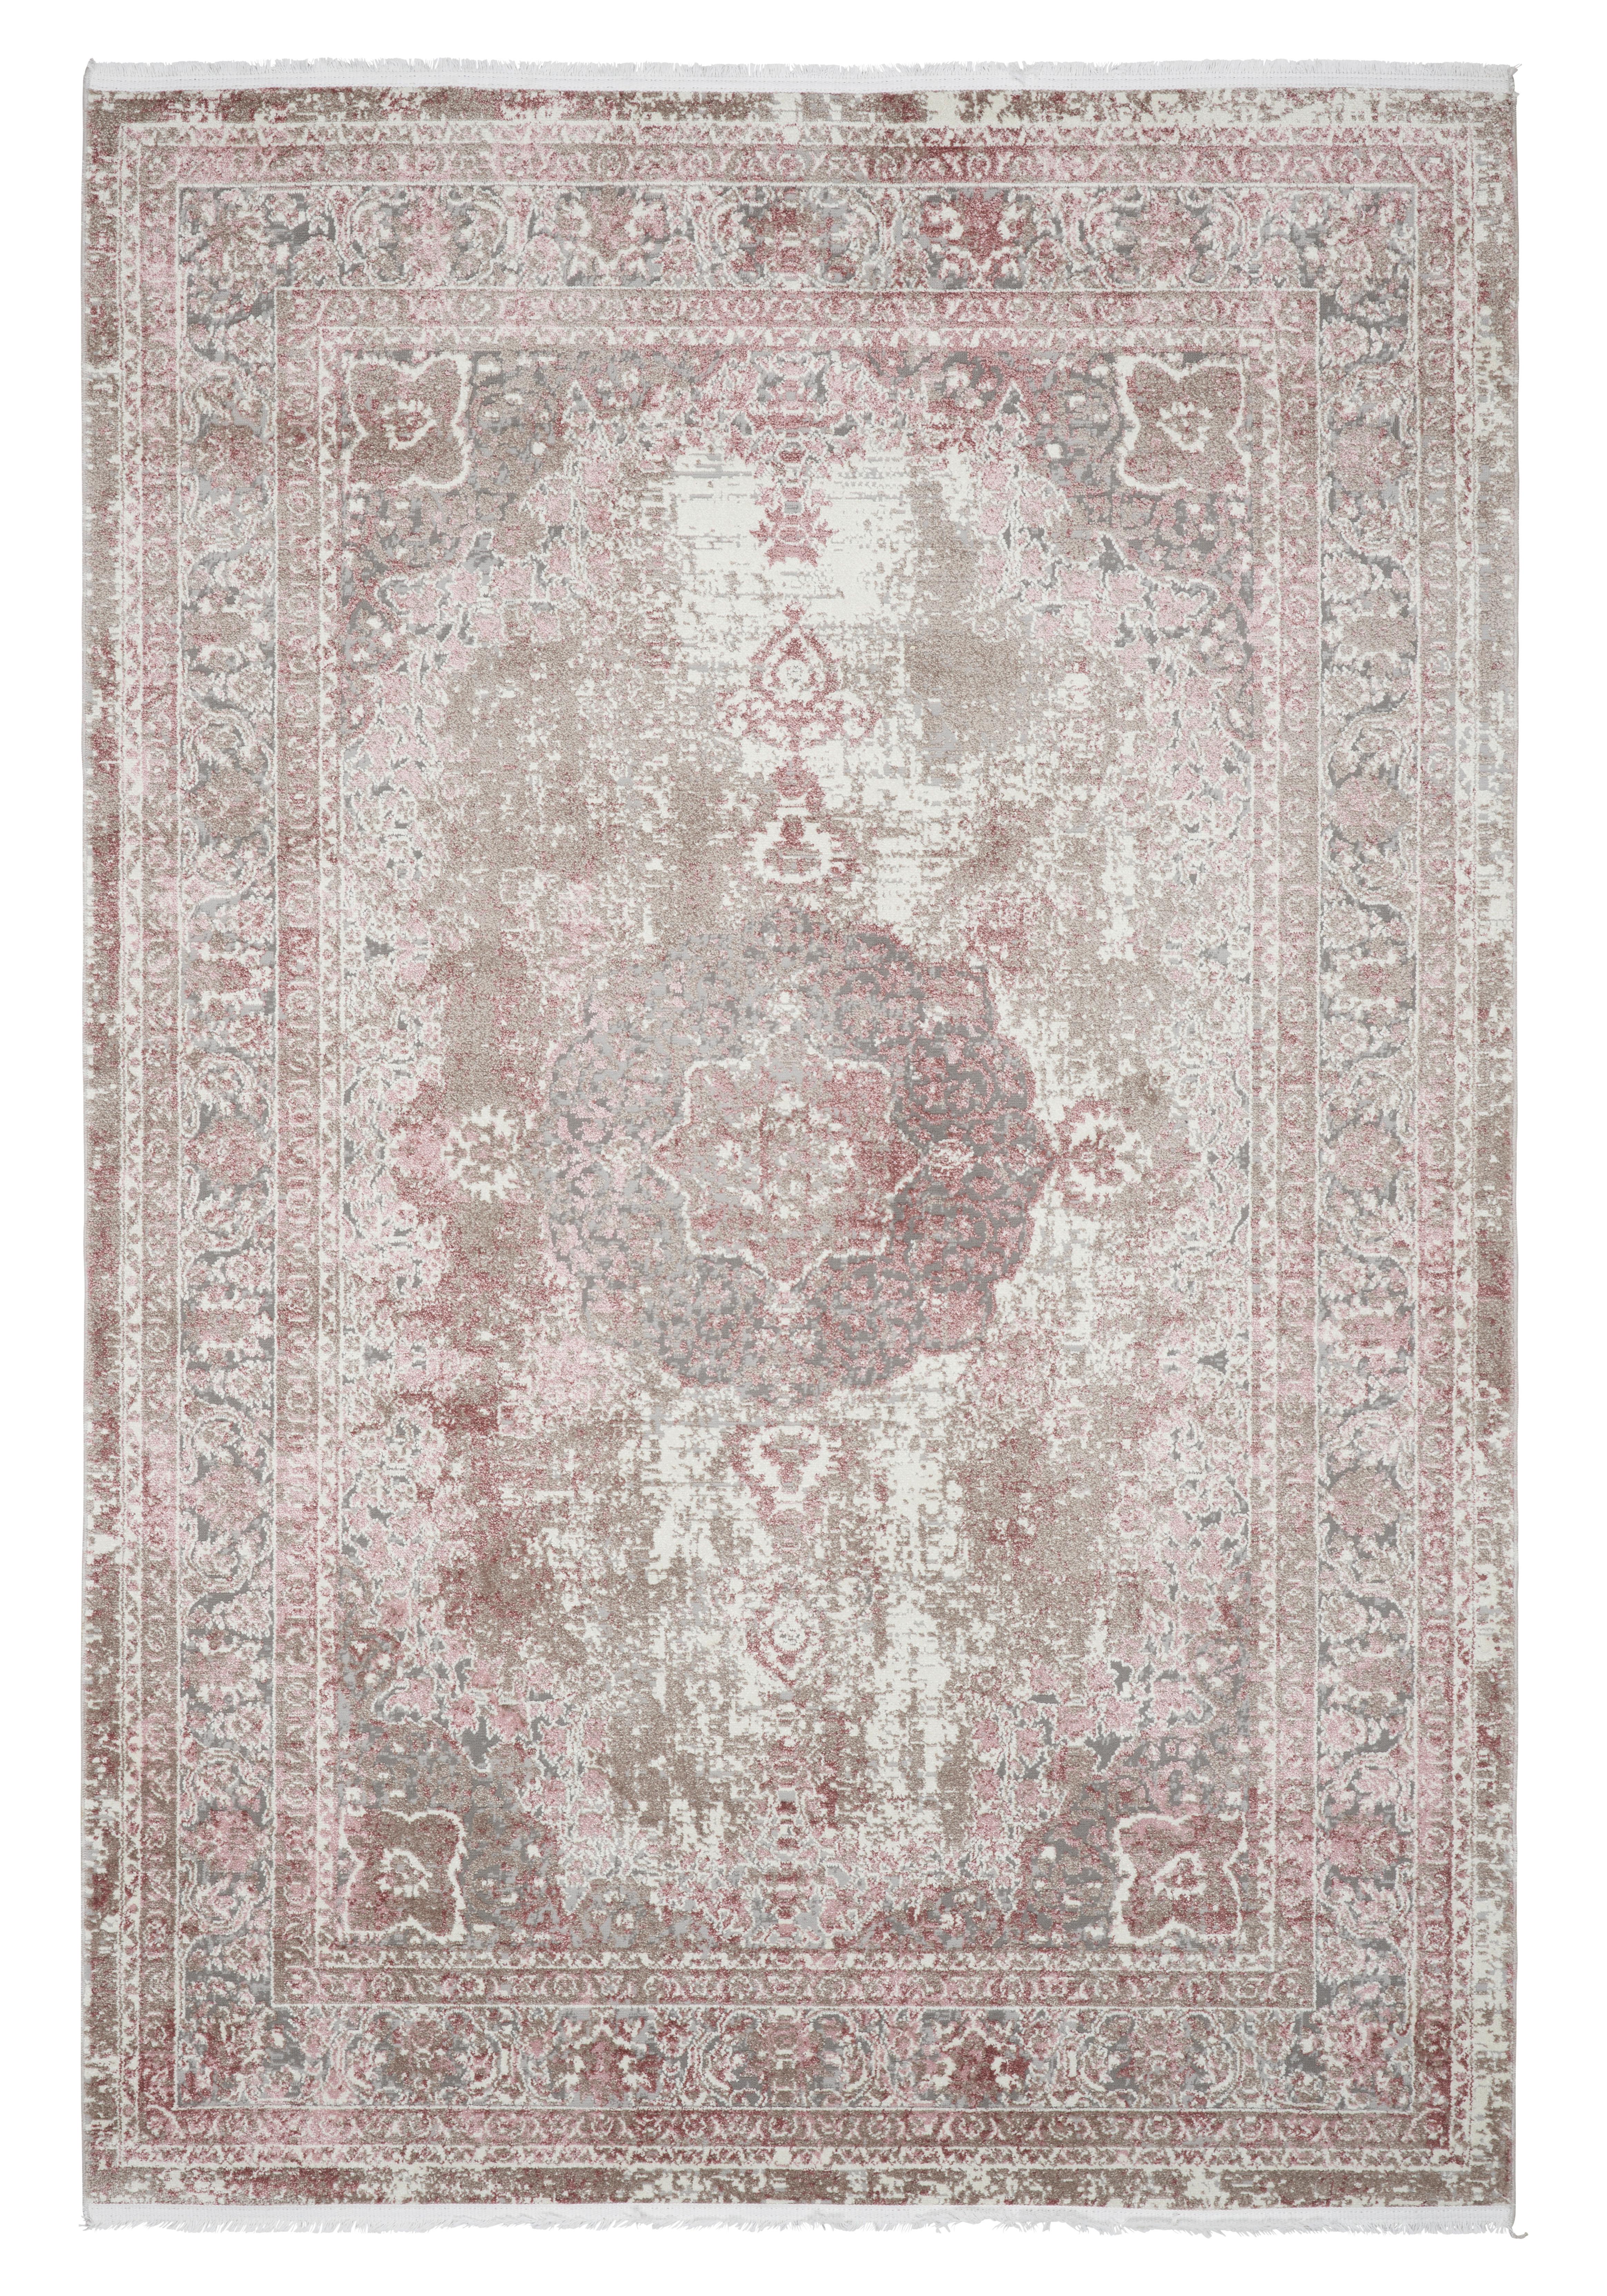 Tkaný Koberec Marcus 1, 80/150cm, Růžová - růžová, textil (80/150cm) - Modern Living